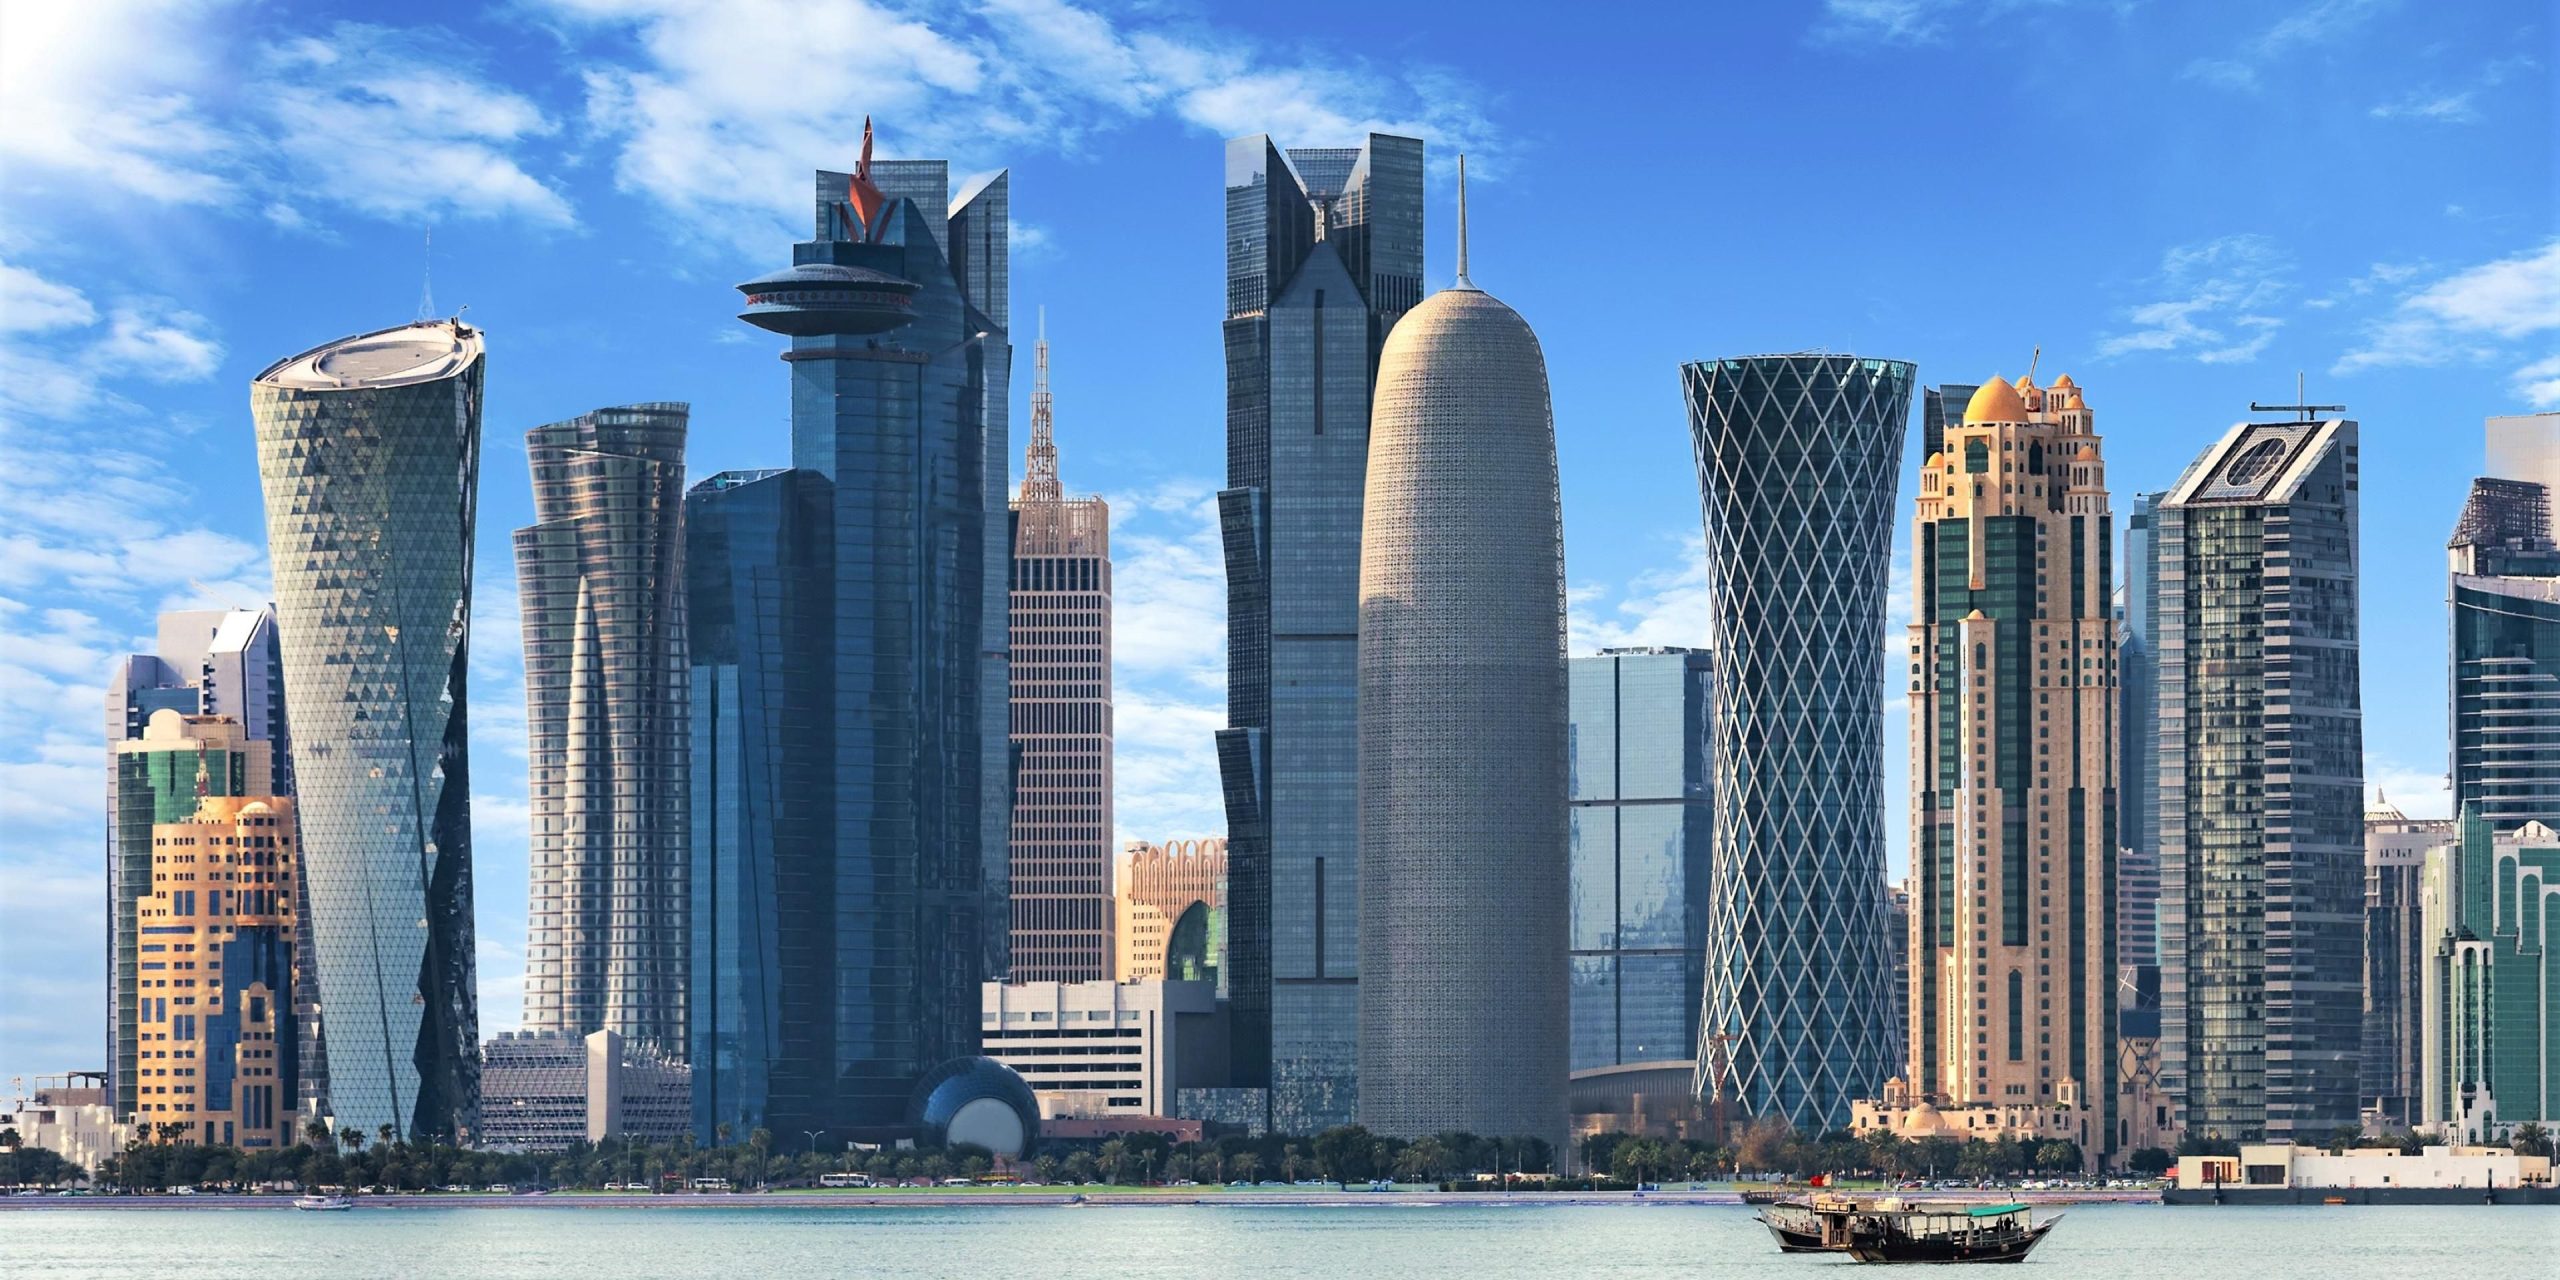 احتلت دولة قطر المرتبة الرابعة في قائمة الدول الأقل خطورة في منطقة الشرق الأوسط وأفريقيا watanserb.com